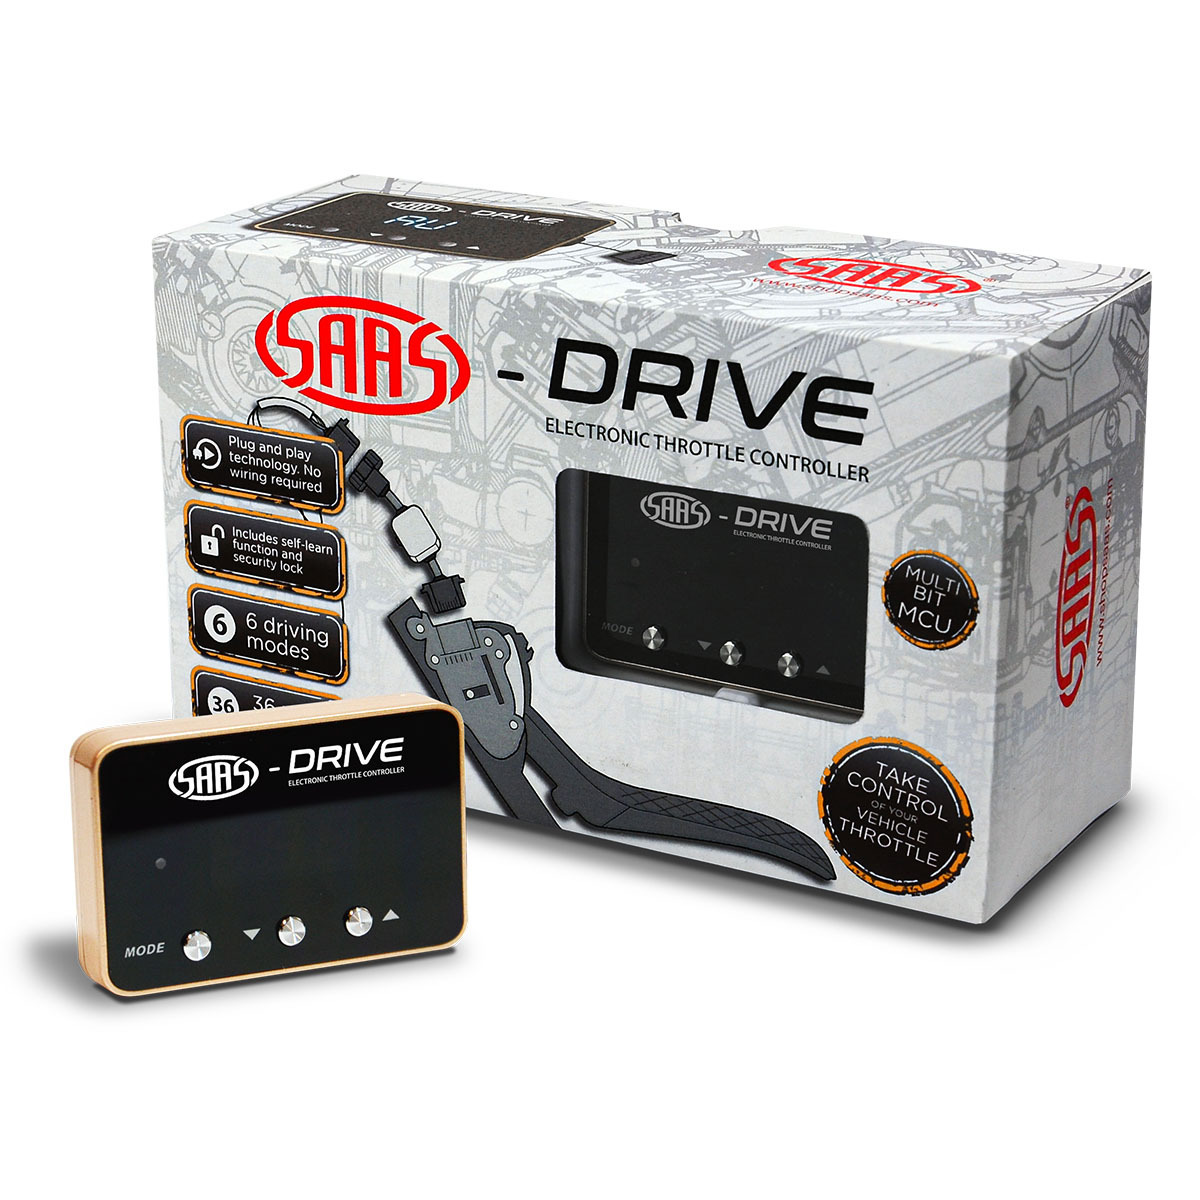 SAAS-Drive Chev Silverado Gen 3 2014 - 2019 Throttle Controller